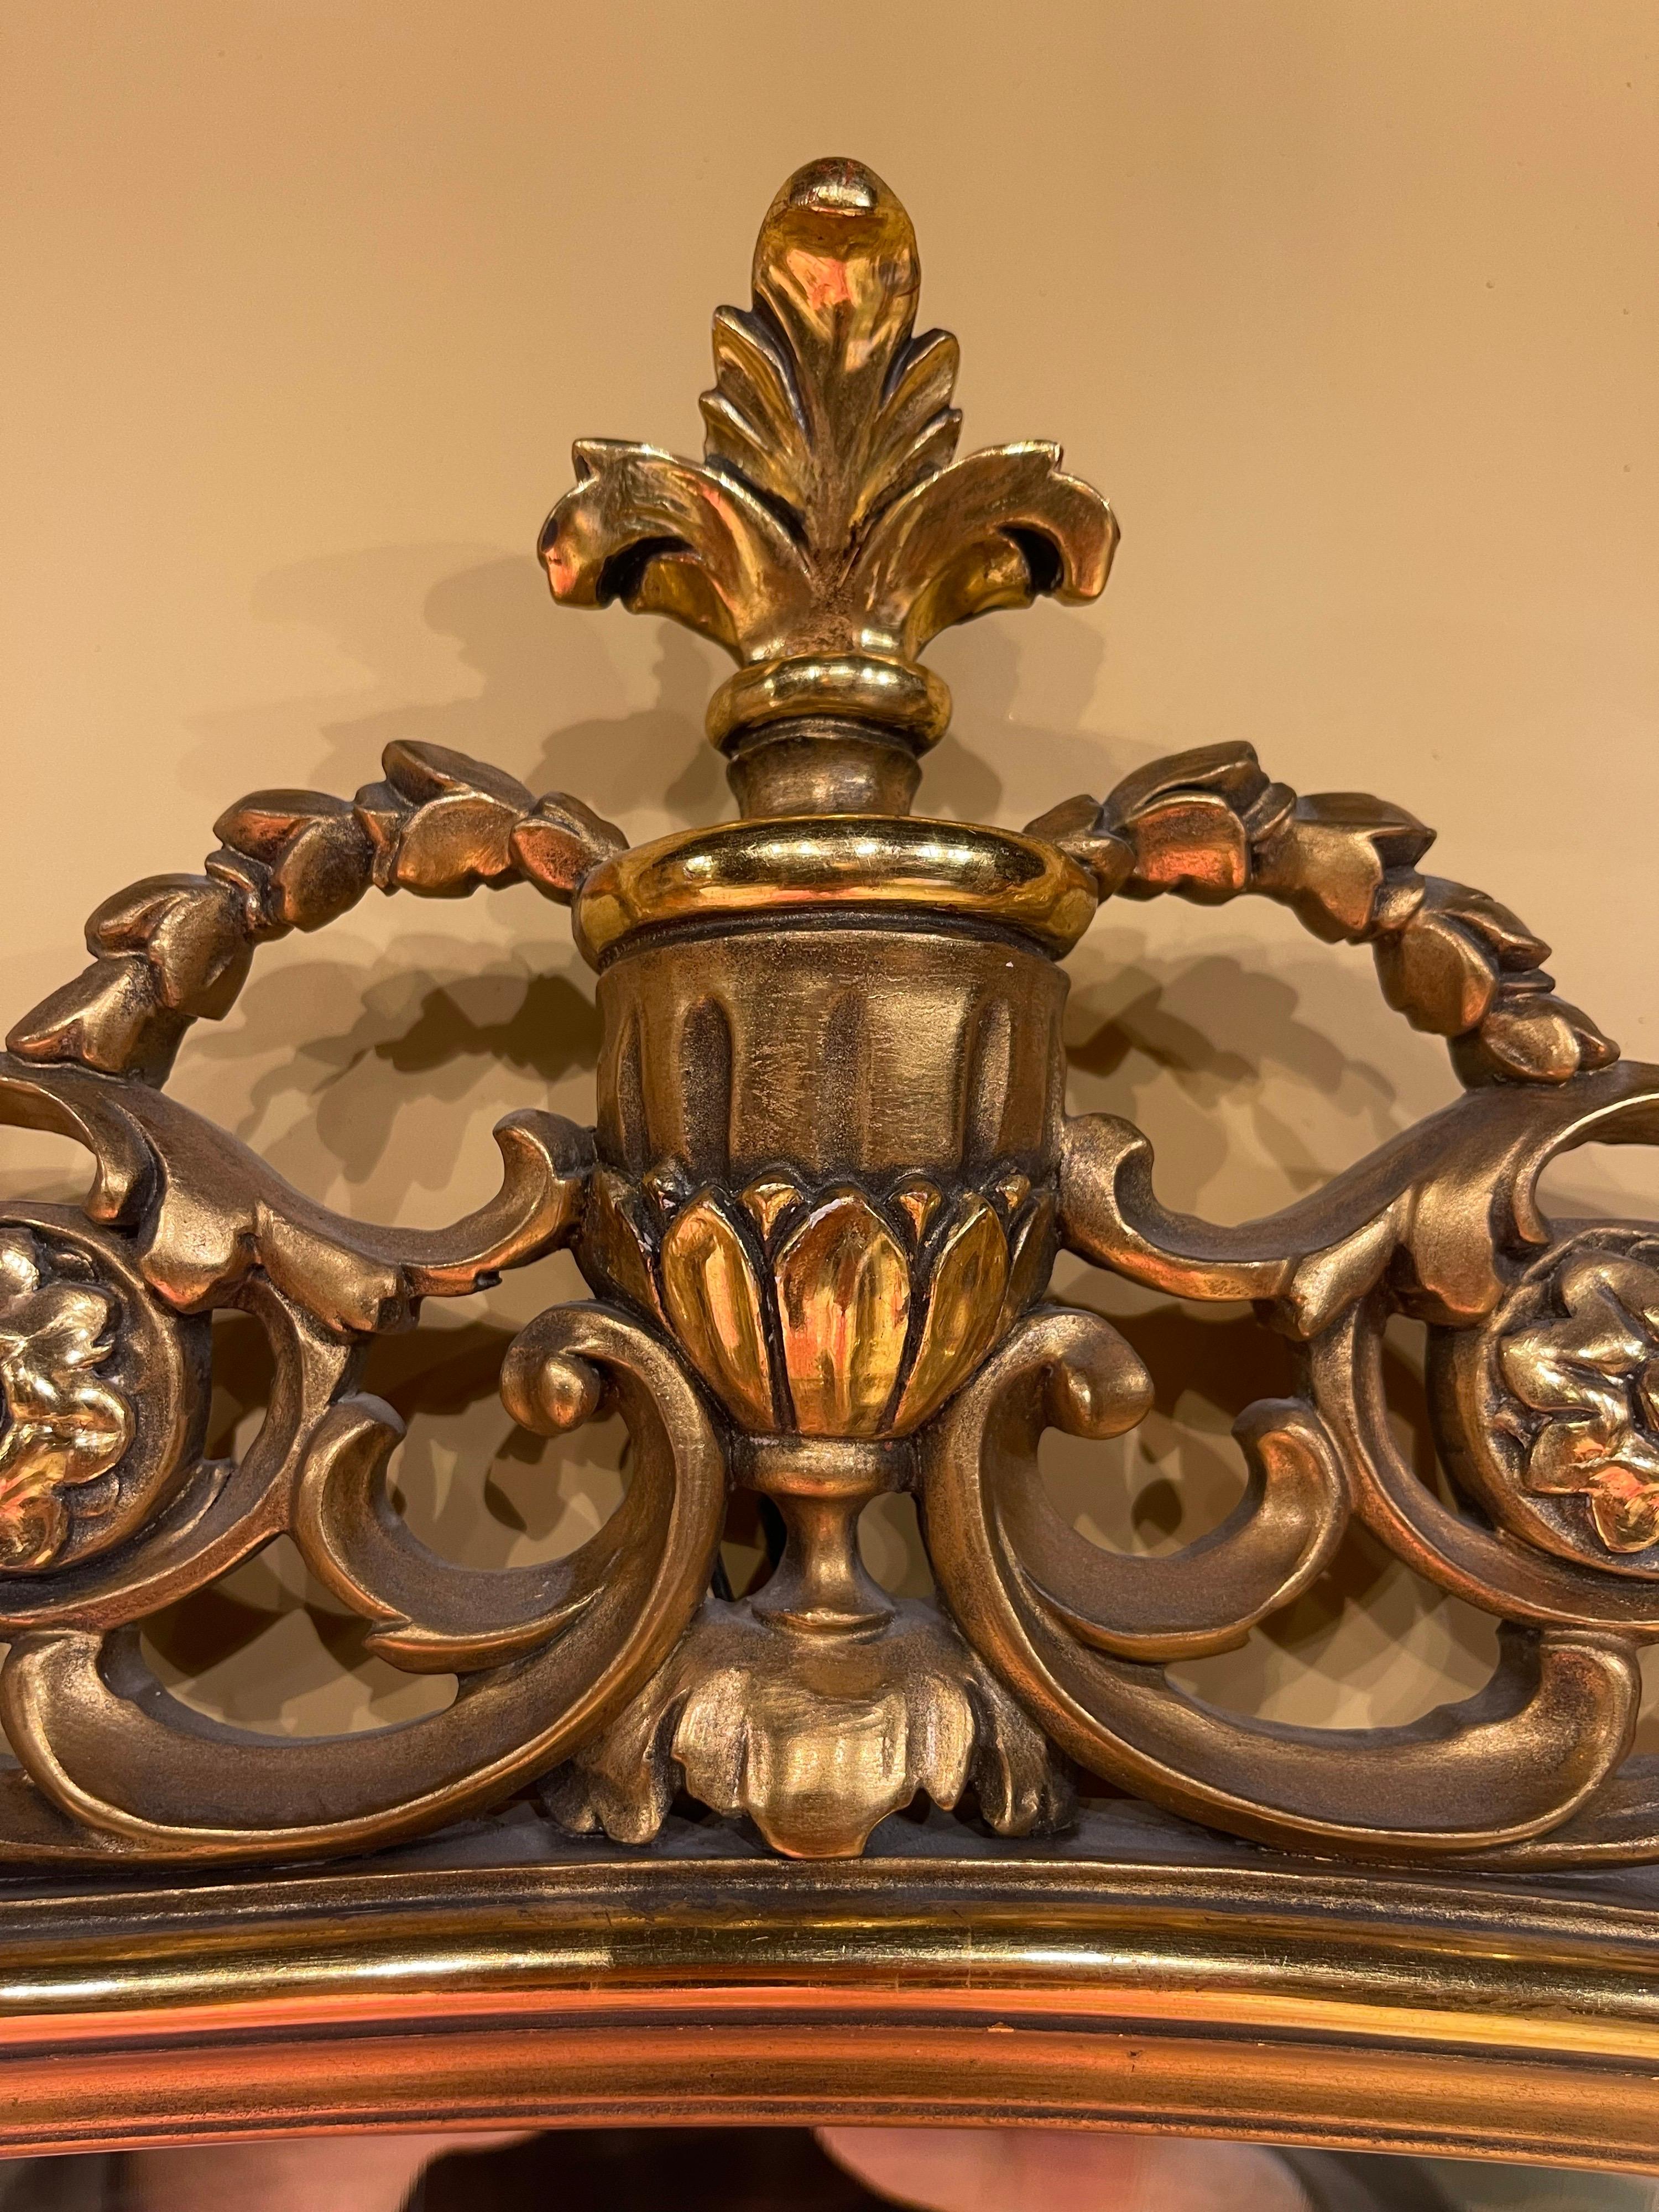 miroir Louis XVI en forme de médaillon, 20ème siècle

Cadre de miroir en bois richement sculpté et doré à la feuille. Sculpture très élaborée réalisée à la main.